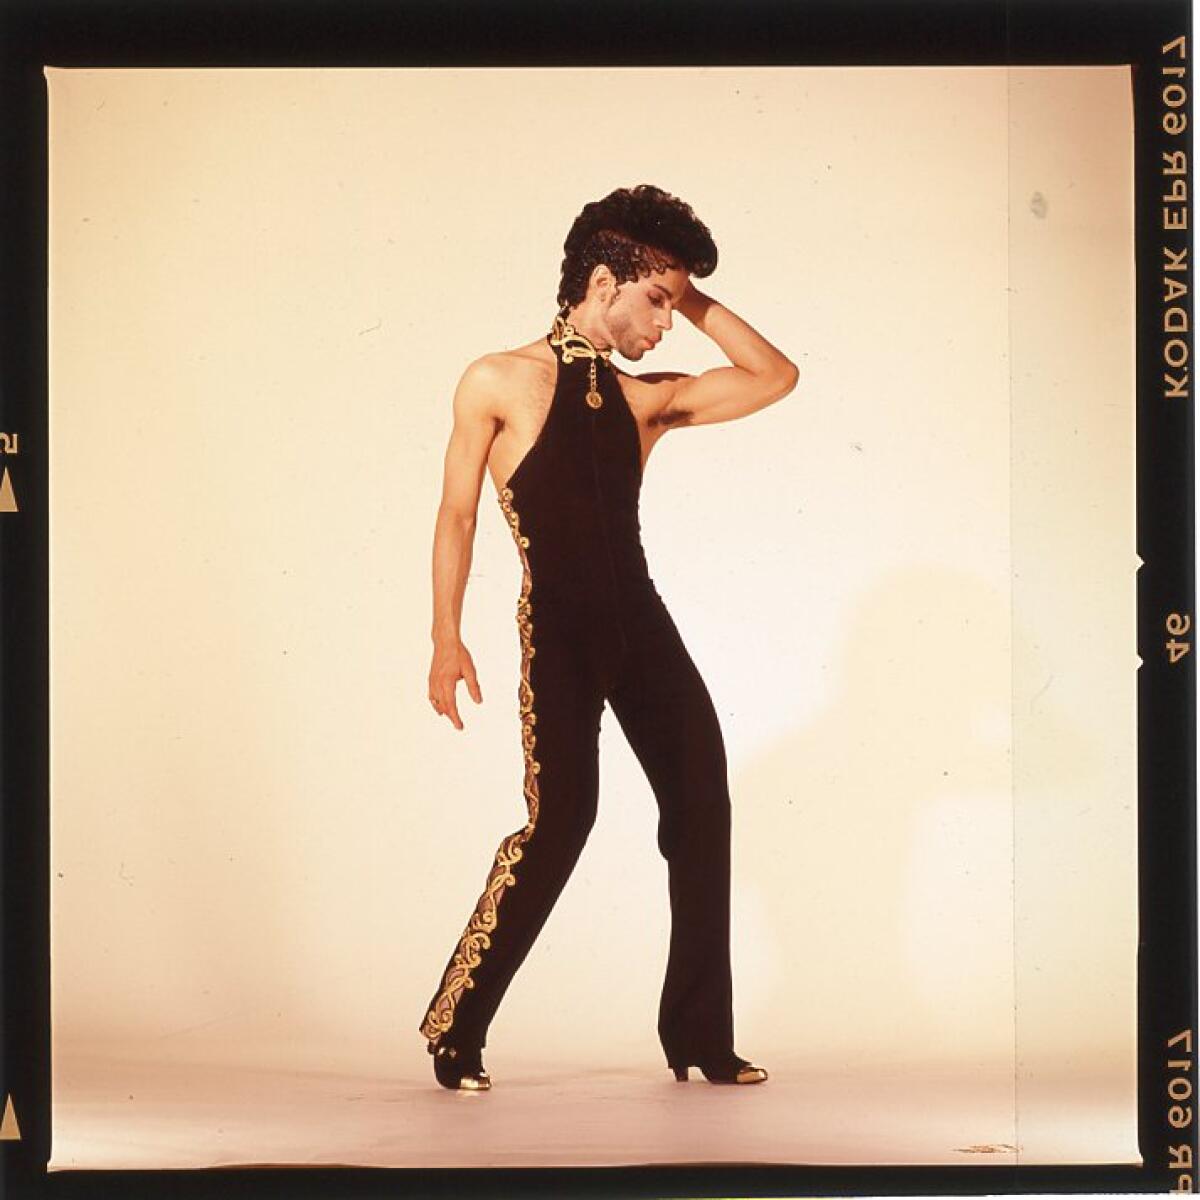 Prince circa 1992-'93